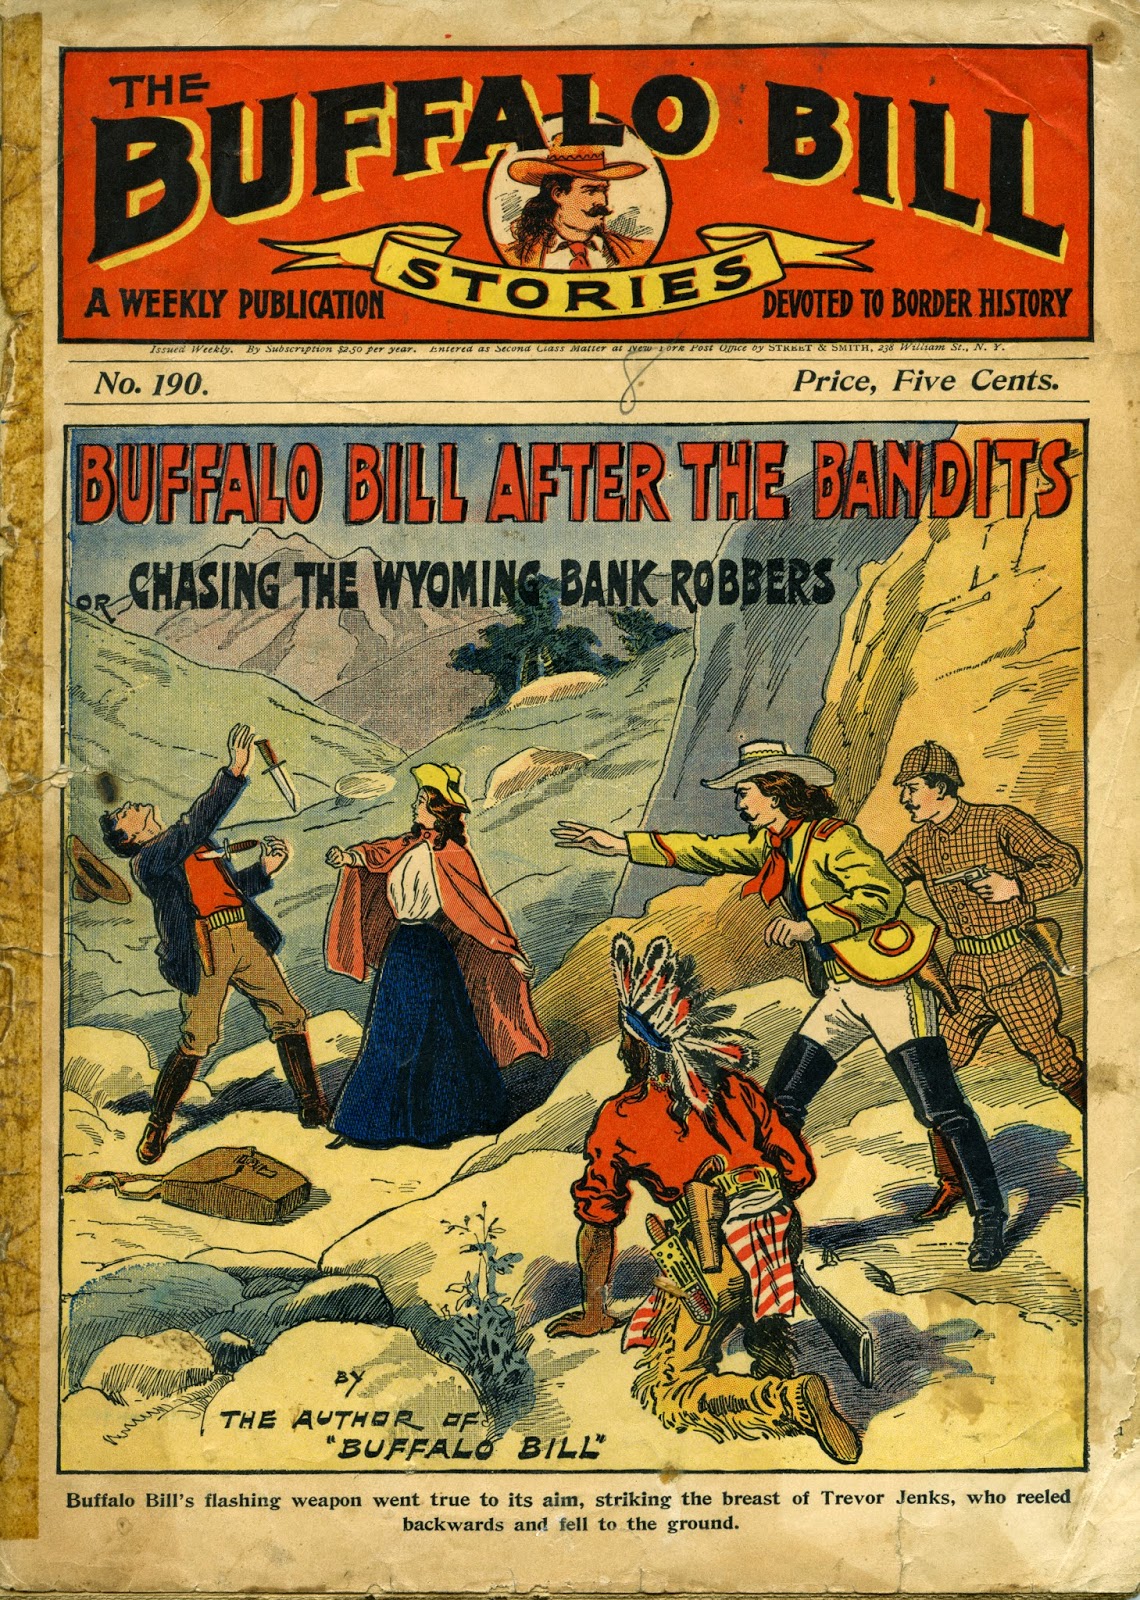 buffalo bill's buffalo bills